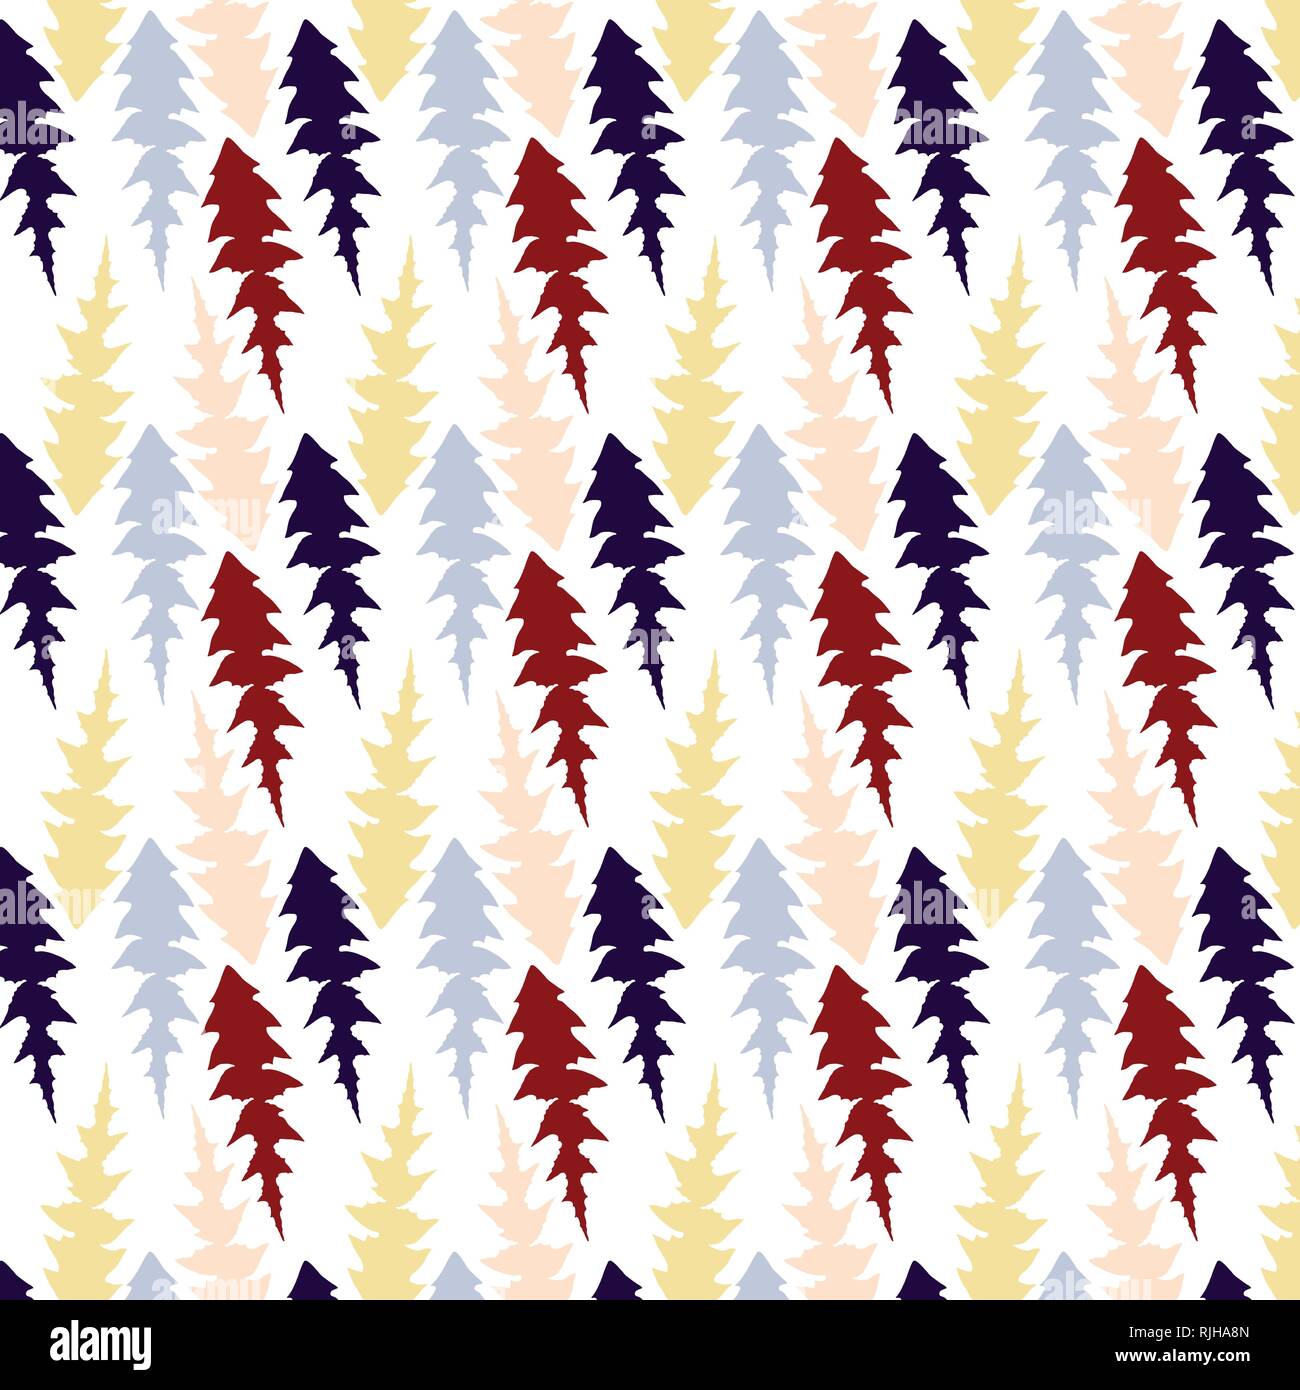 Les feuilles de pissenlit dans un modèle vectoriel rouge, jaune, rose et bleu foncé de la palette de couleurs Illustration de Vecteur